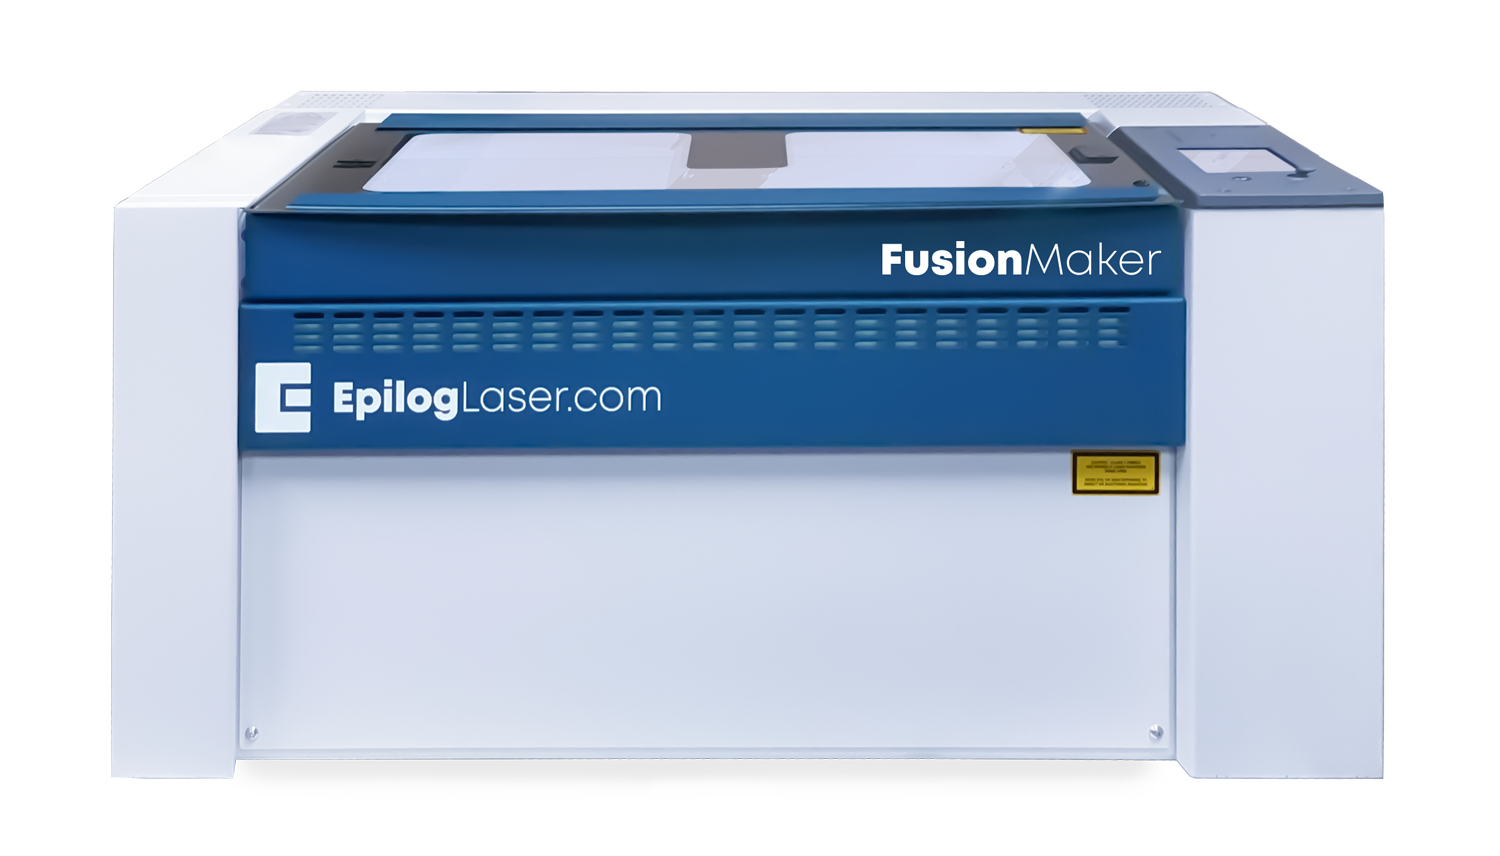 Epilog Laser Introduces New Fusion Maker Laser System 